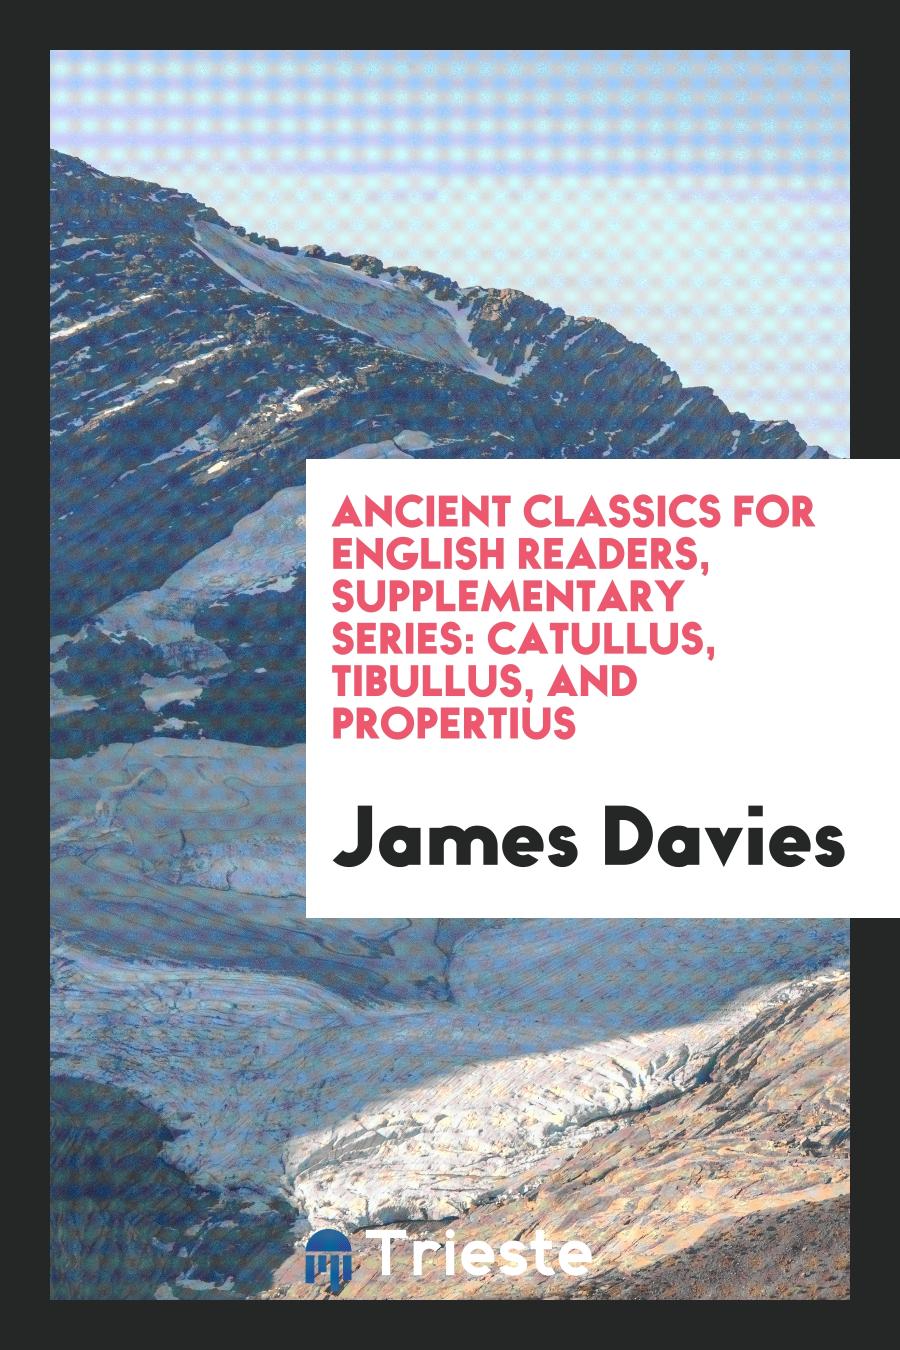 Ancient Classics for English Readers, Supplementary Series: Catullus, Tibullus, and Propertius